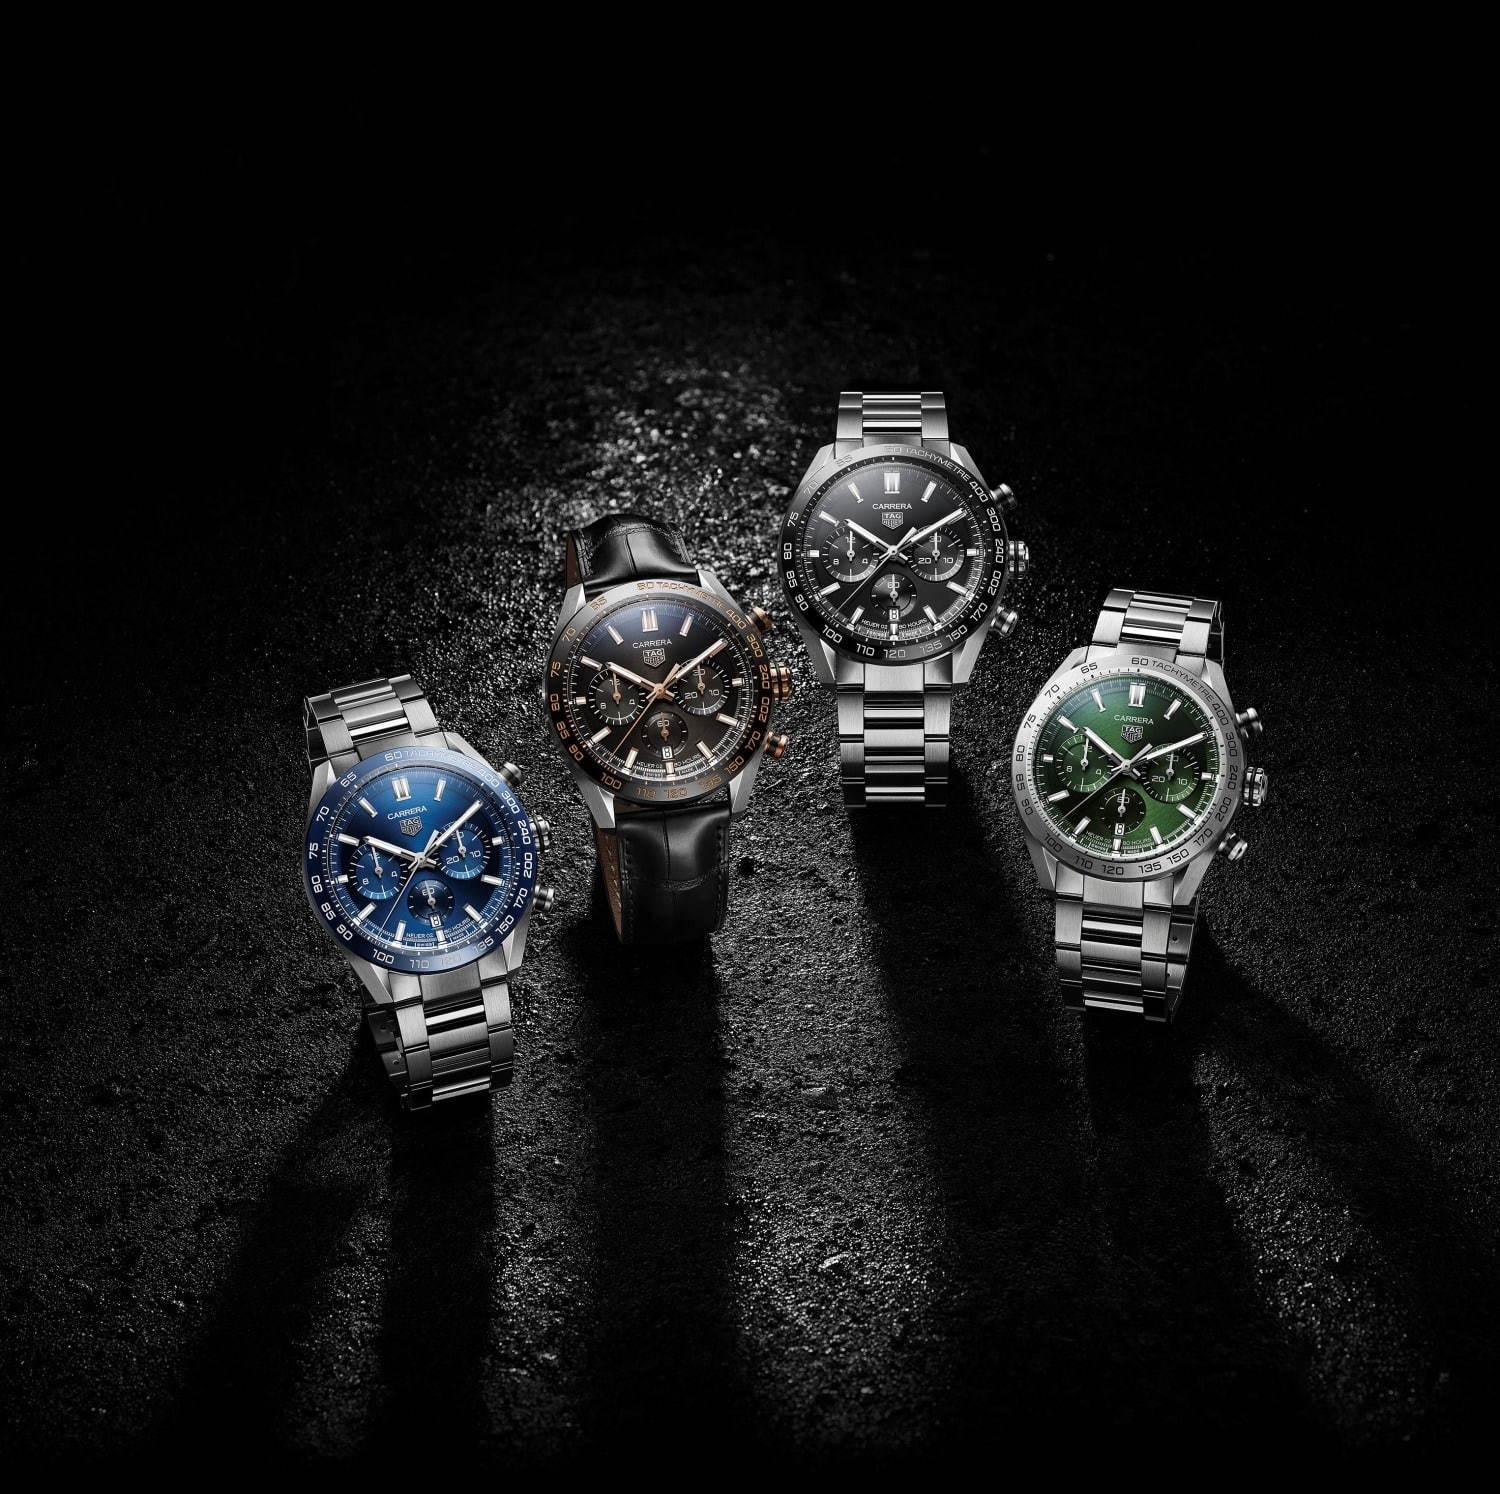 タグ・ホイヤーの腕時計「カレラ クロノグラフ」新作4モデル、“レーシング”から着想したデザイン コピー